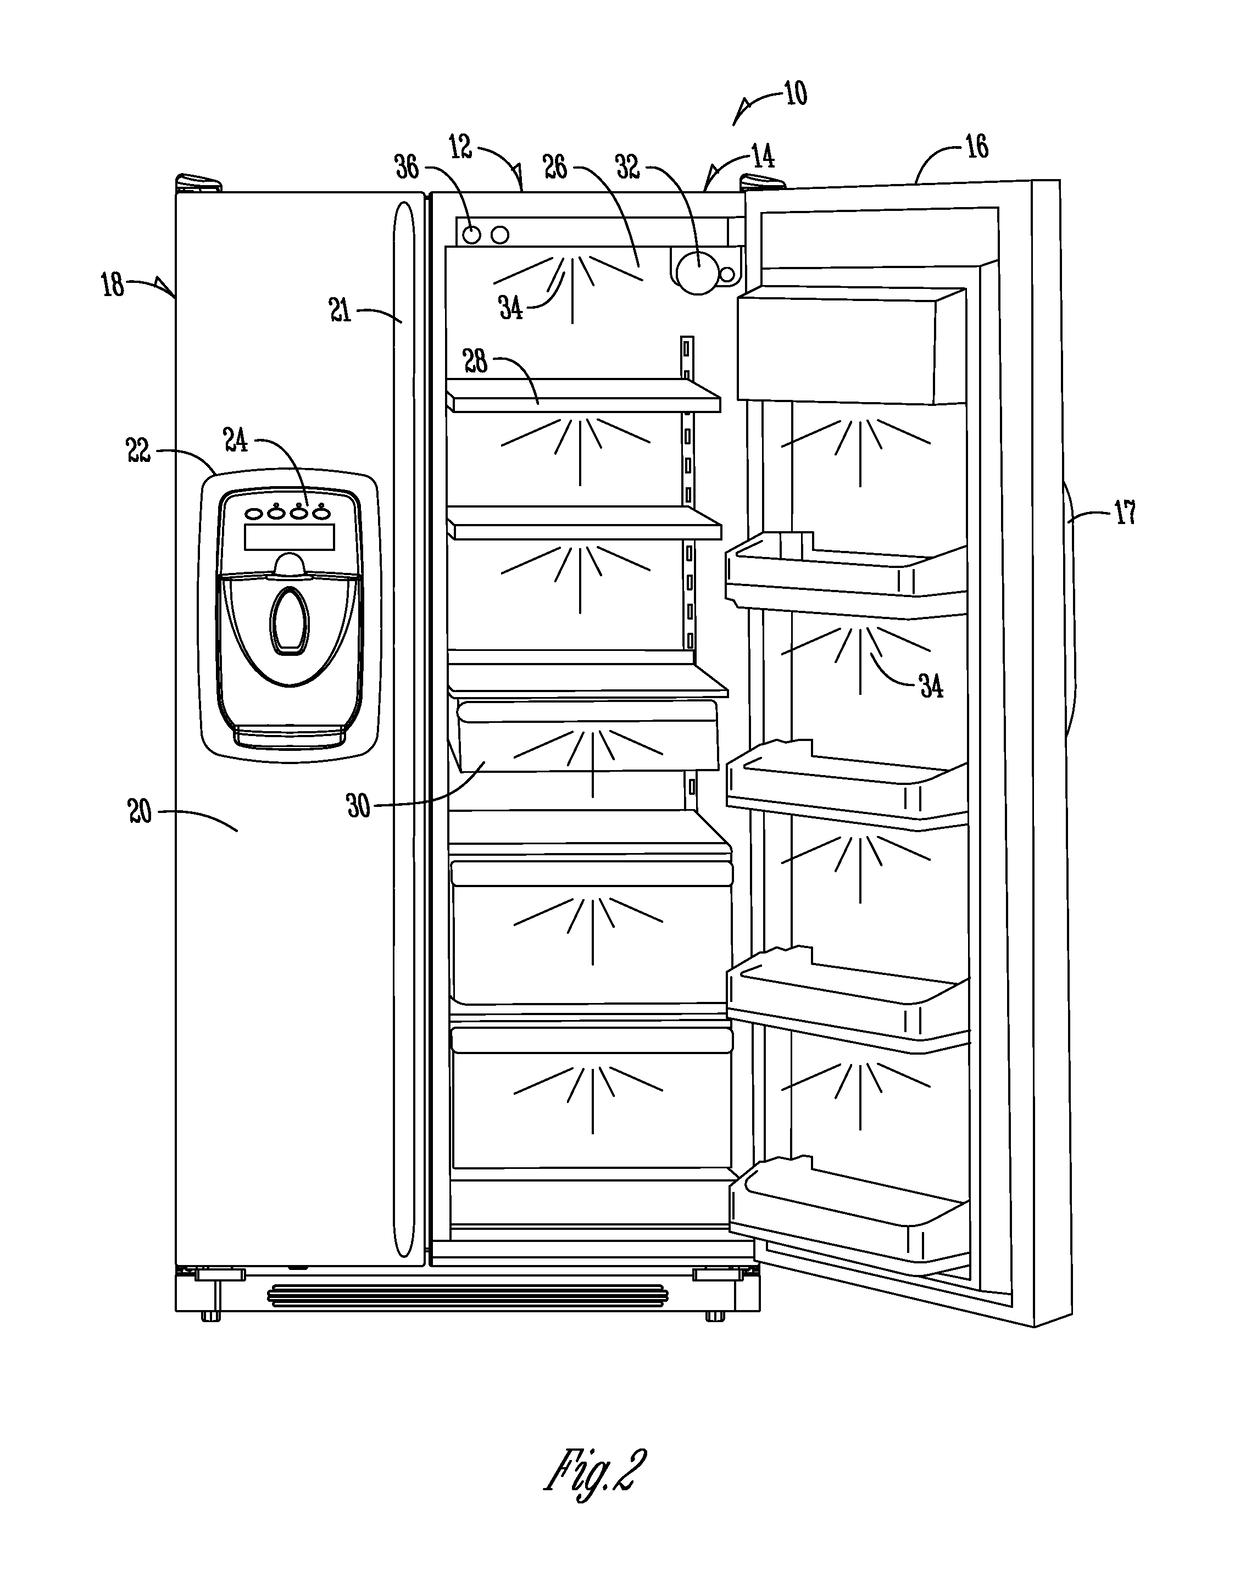 Sensor system for refrigerator